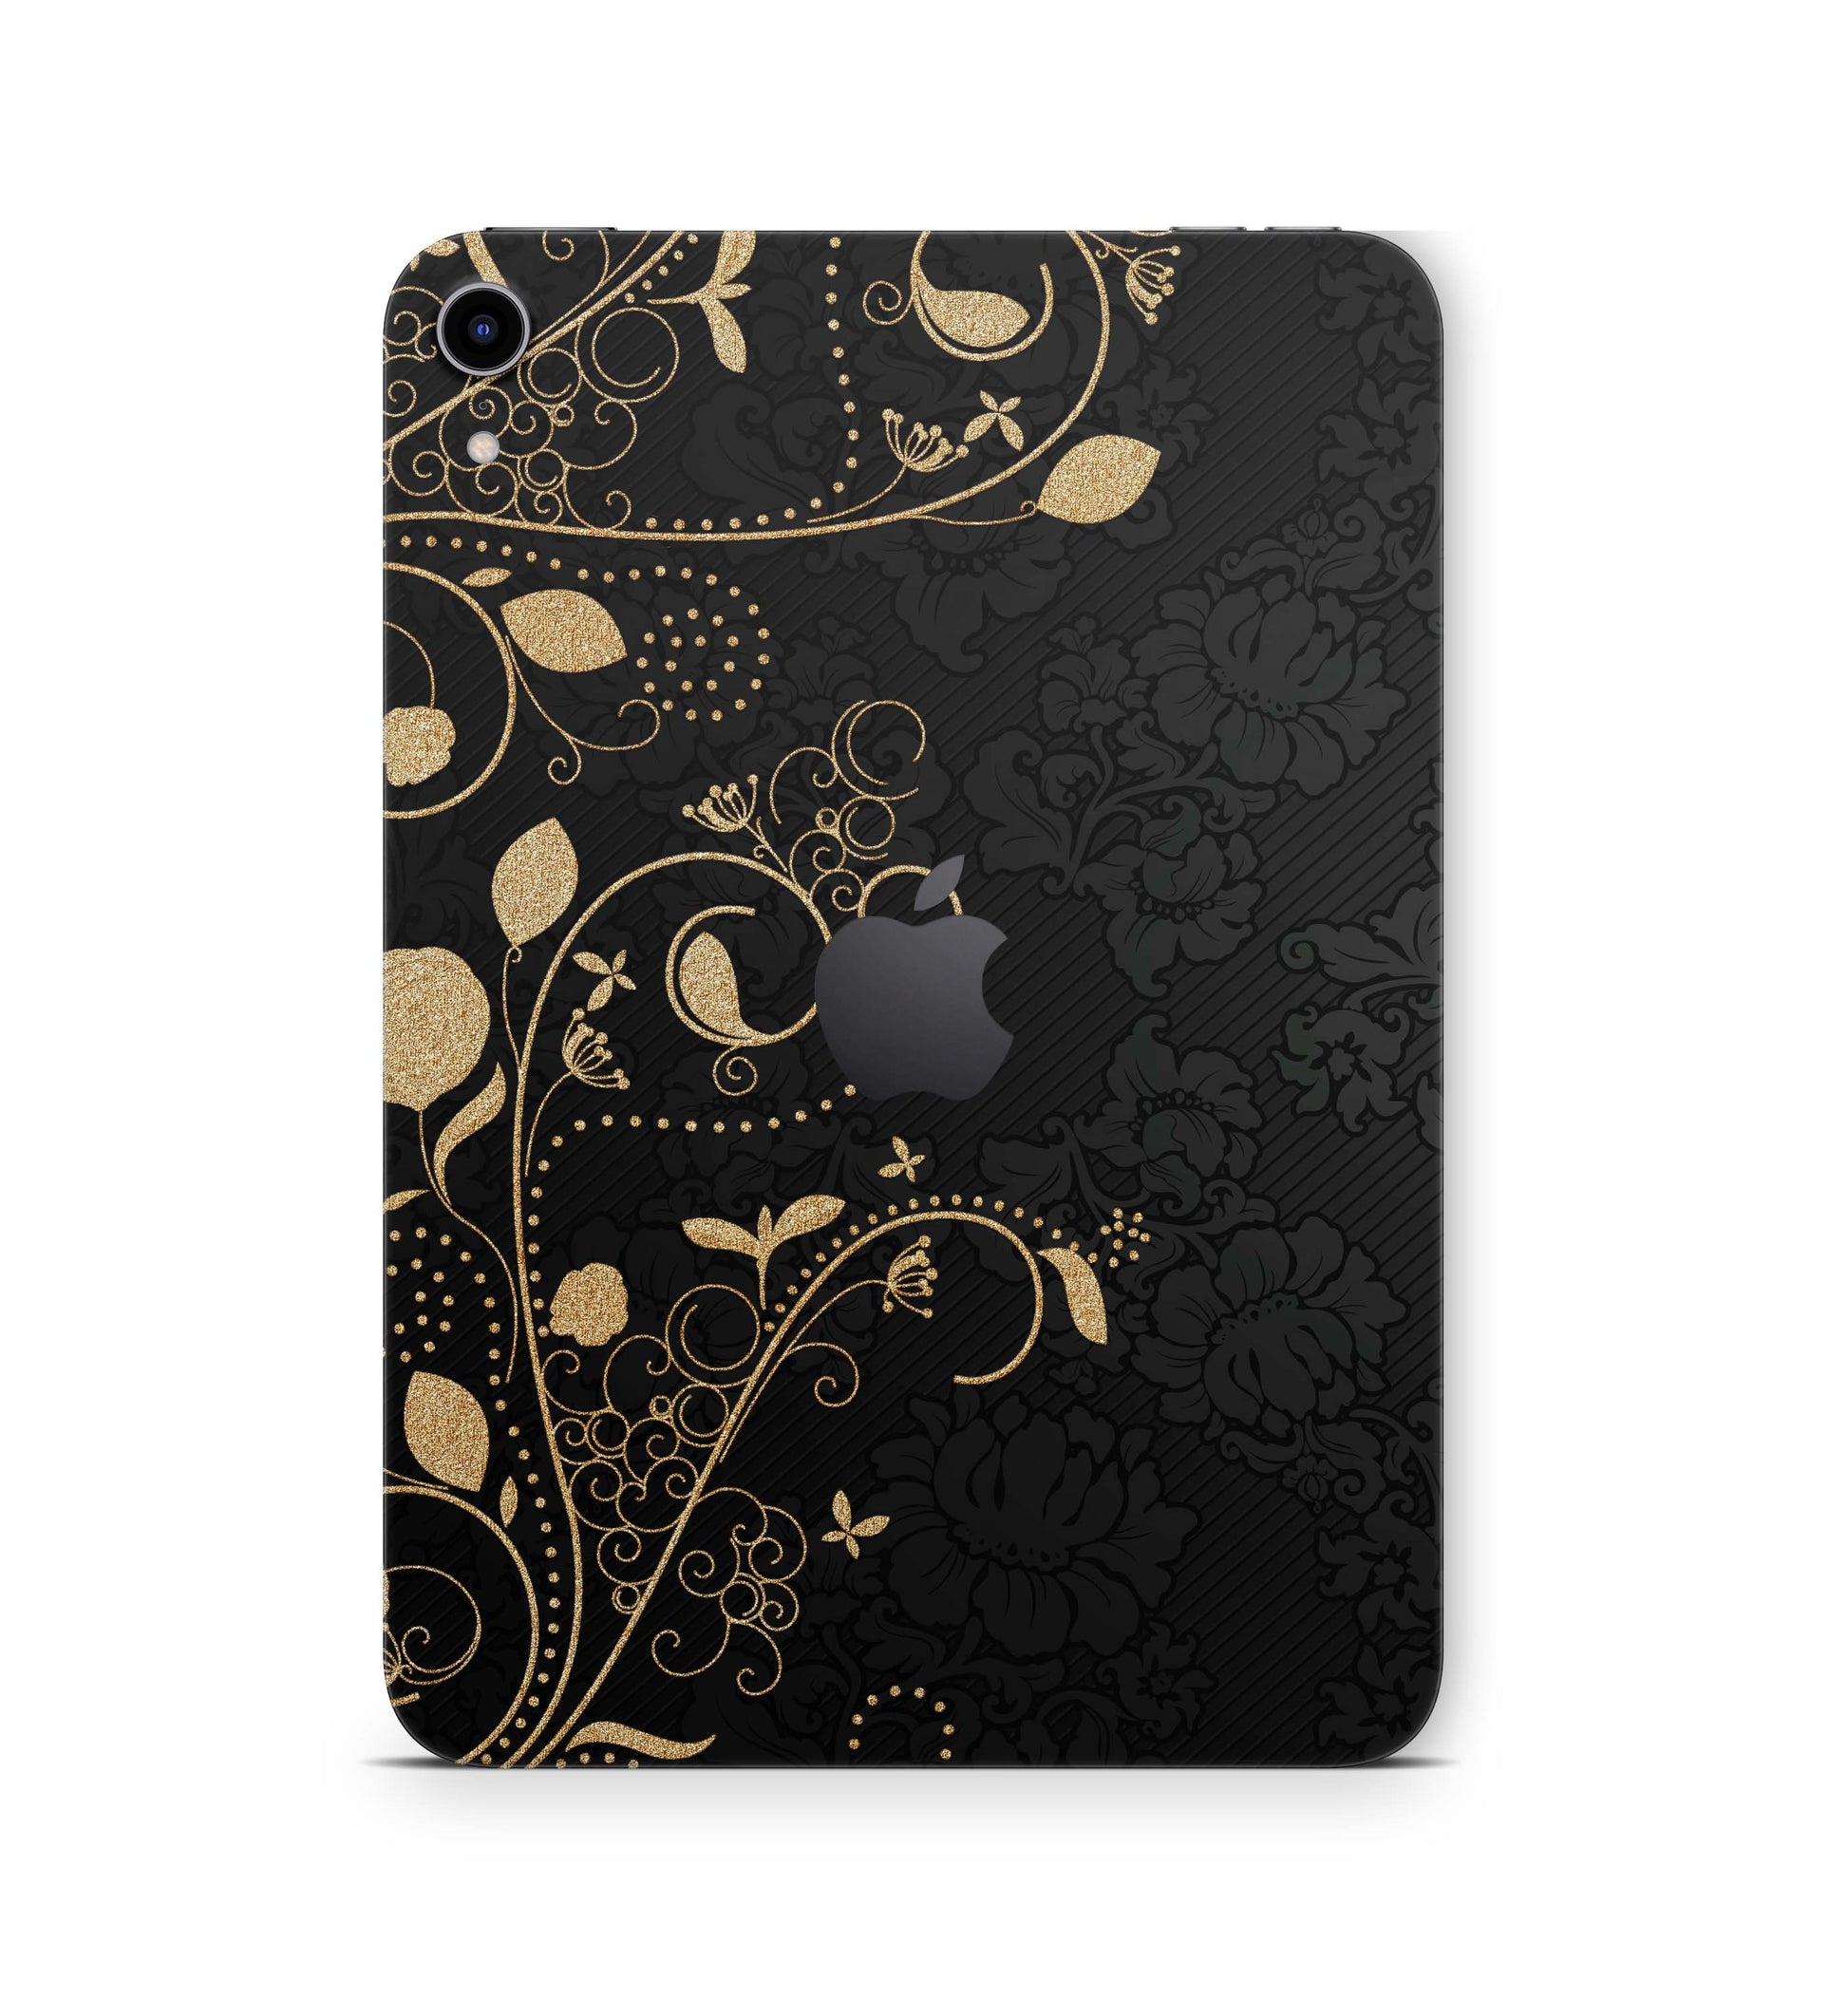 iPad Air Skin Design Cover Folie Vinyl Skins & Wraps für alle iPad Air Modelle Aufkleber Skins4u Darkmoon  